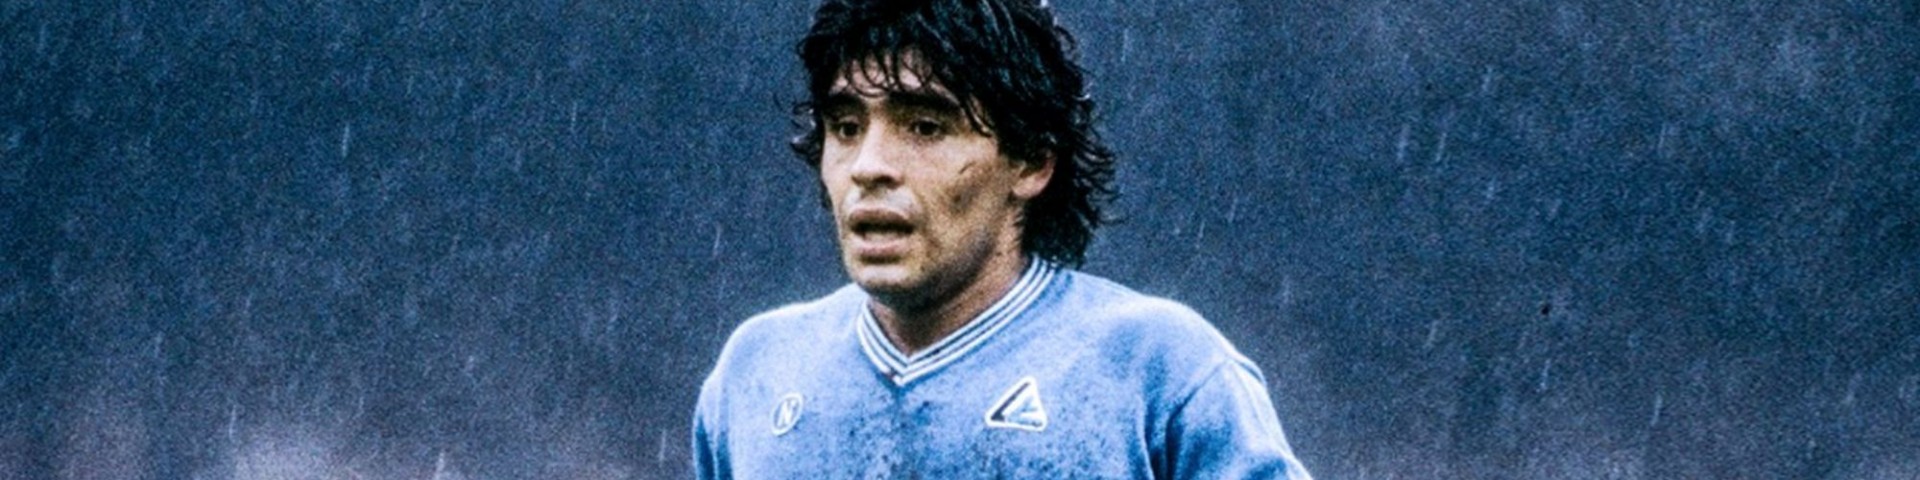 Maradona: i migliori goal del calciatore (Video)